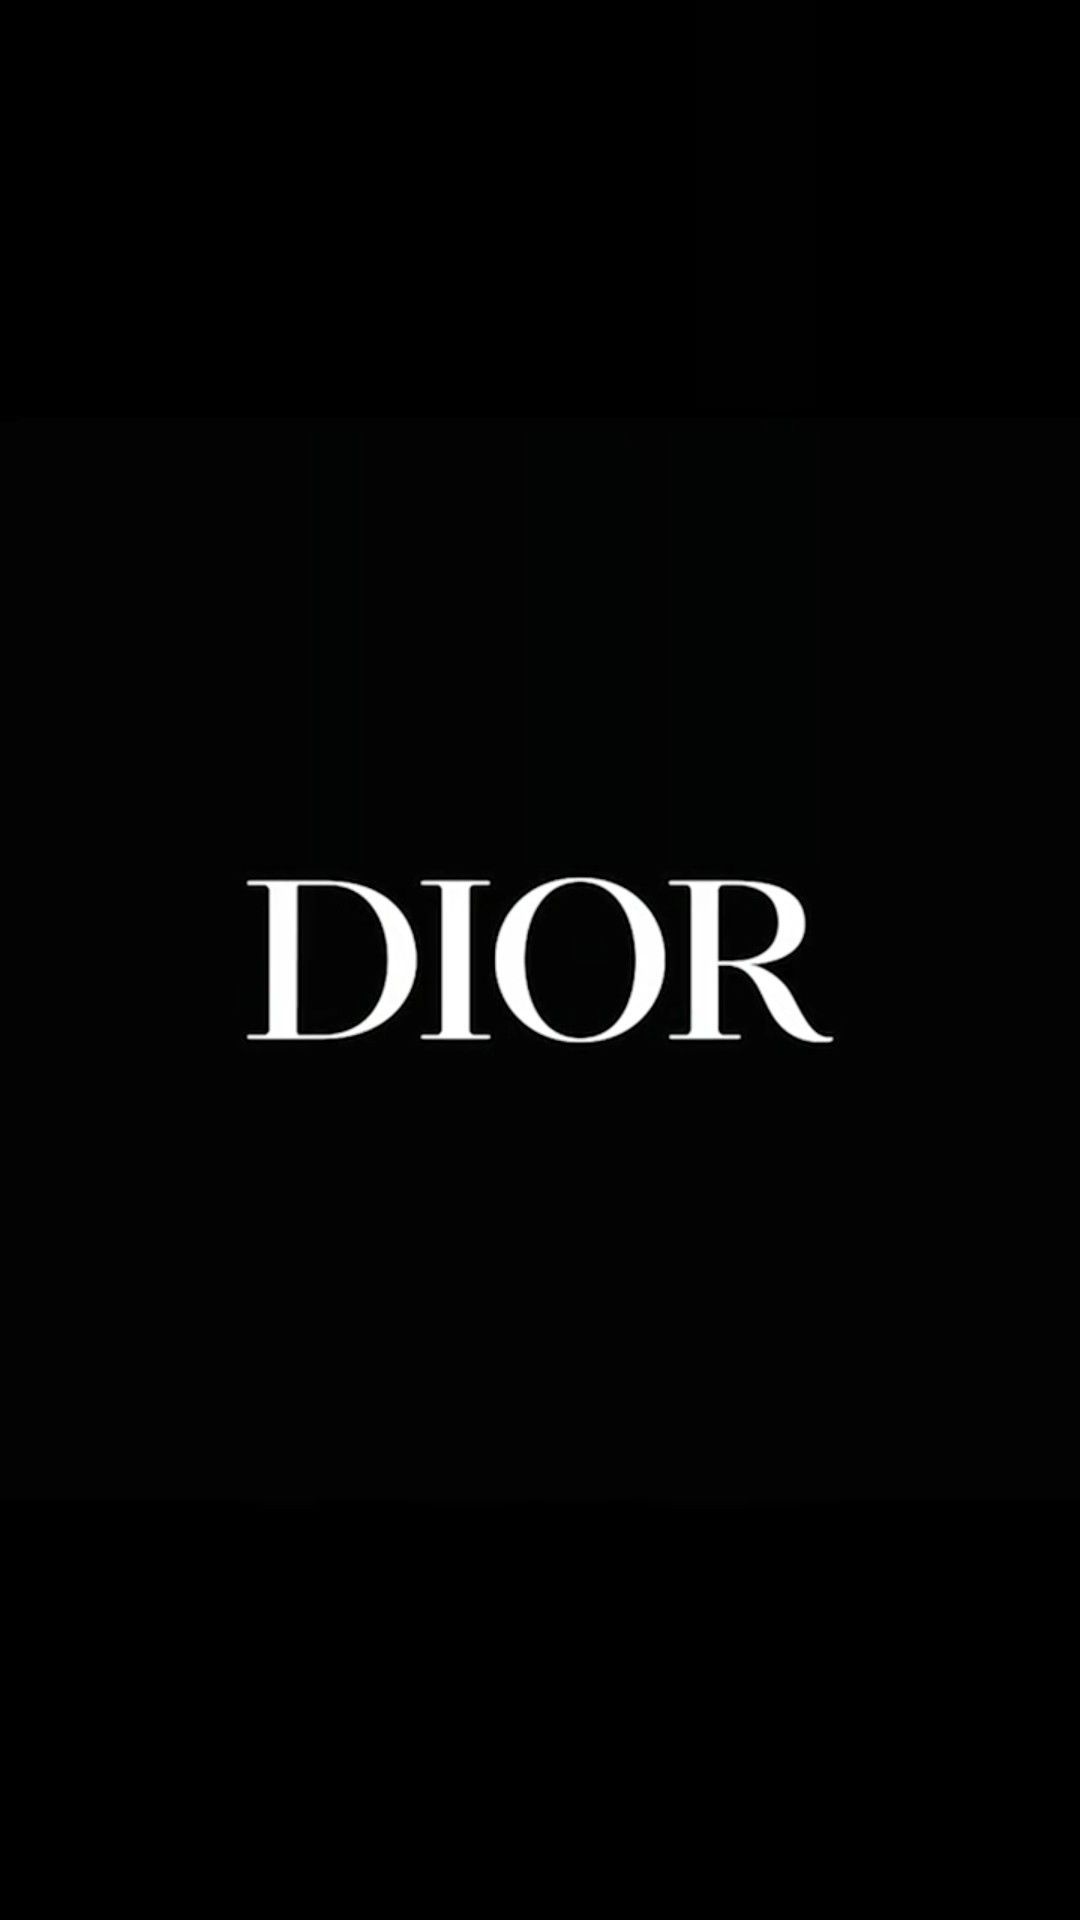 ❁ Dior Wallpaper ❁. Dior wallpaper, Classy wallpaper, Black aesthetic wallpaper